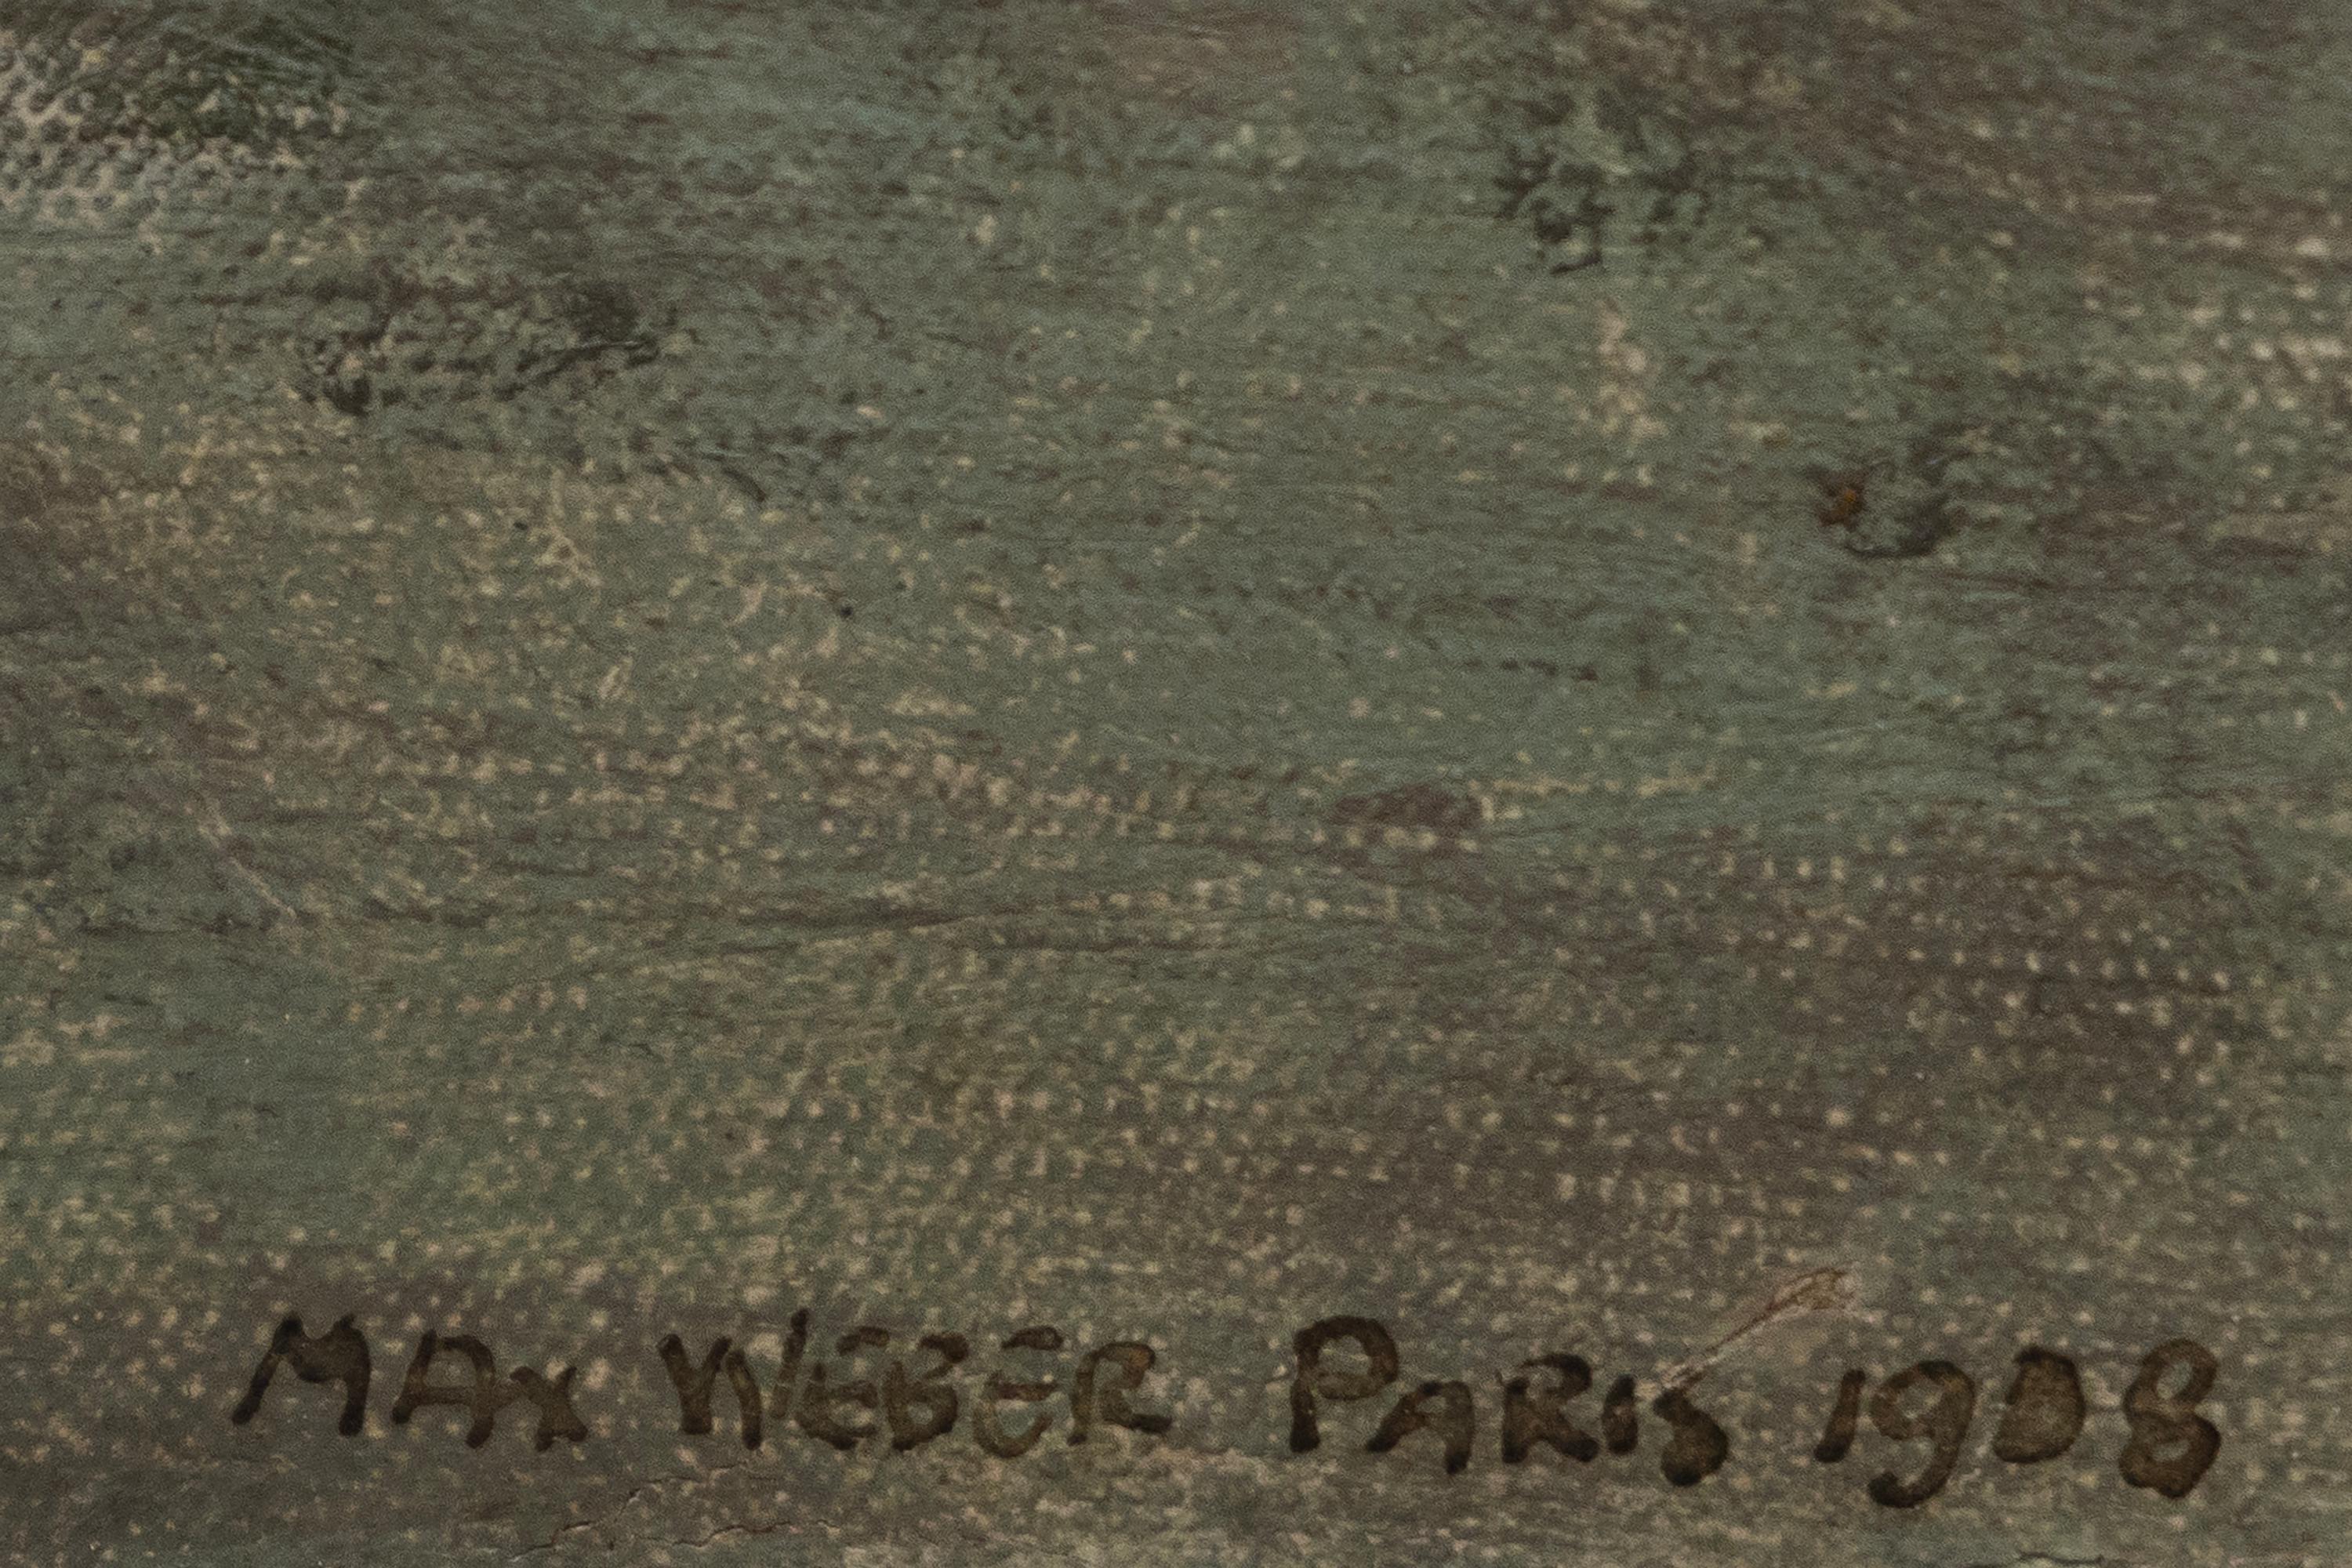 Modèle parisien - Modernisme américain Painting par Max Weber